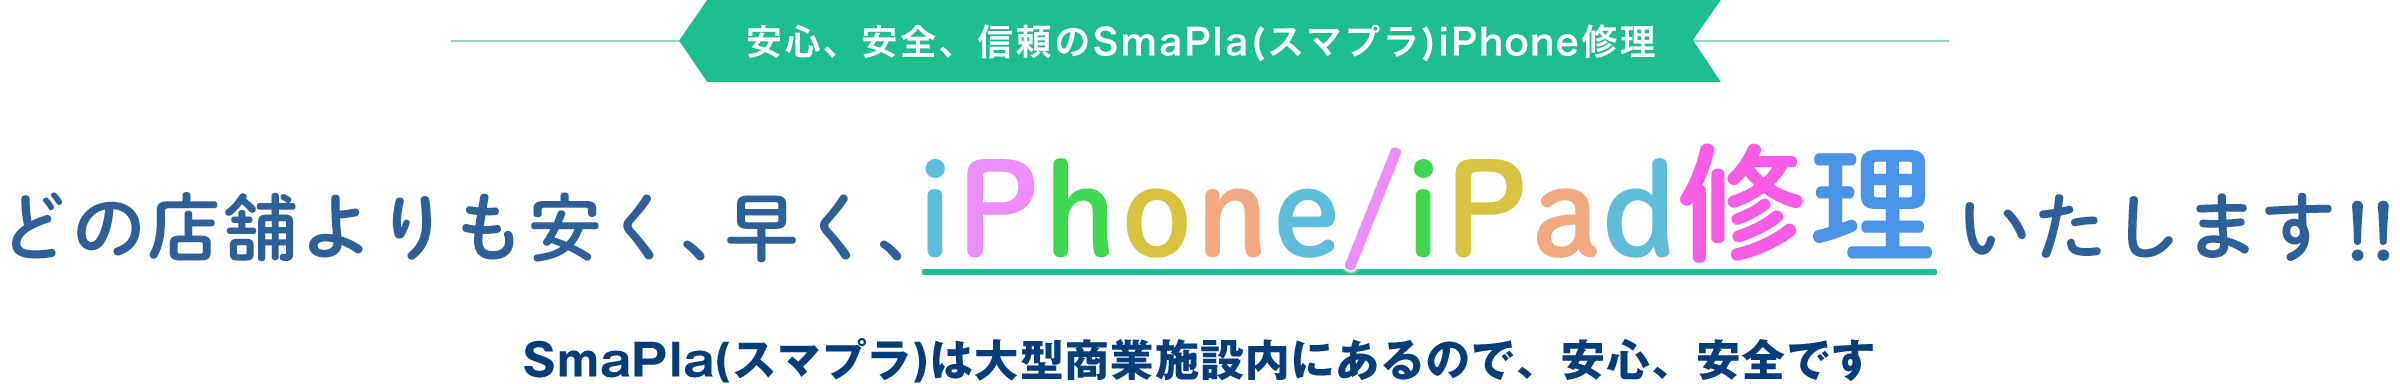 安心、安全、信頼のSmaPla(スマプラ)iPhone修理 どの店舗よりも安く、早く、iPhone修理いたします!!SmaPla(スマプラ)は大型商業施設内にあるので、安心、安全です